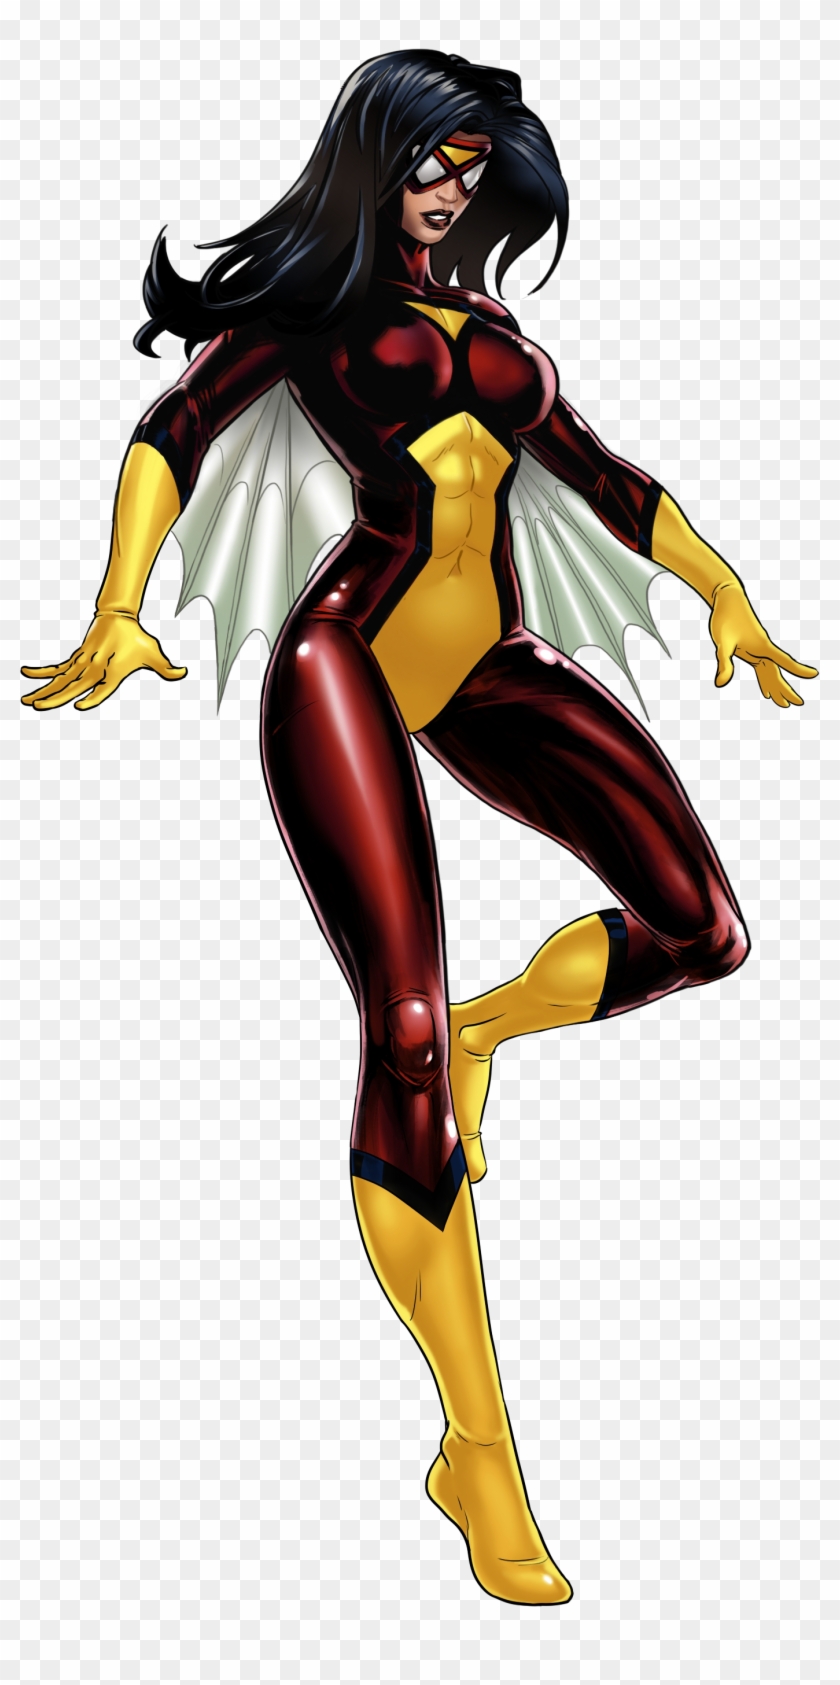 Hq Spider-woman Wallpapers - Captain Marvel Marvel Avengers Alliance #767661